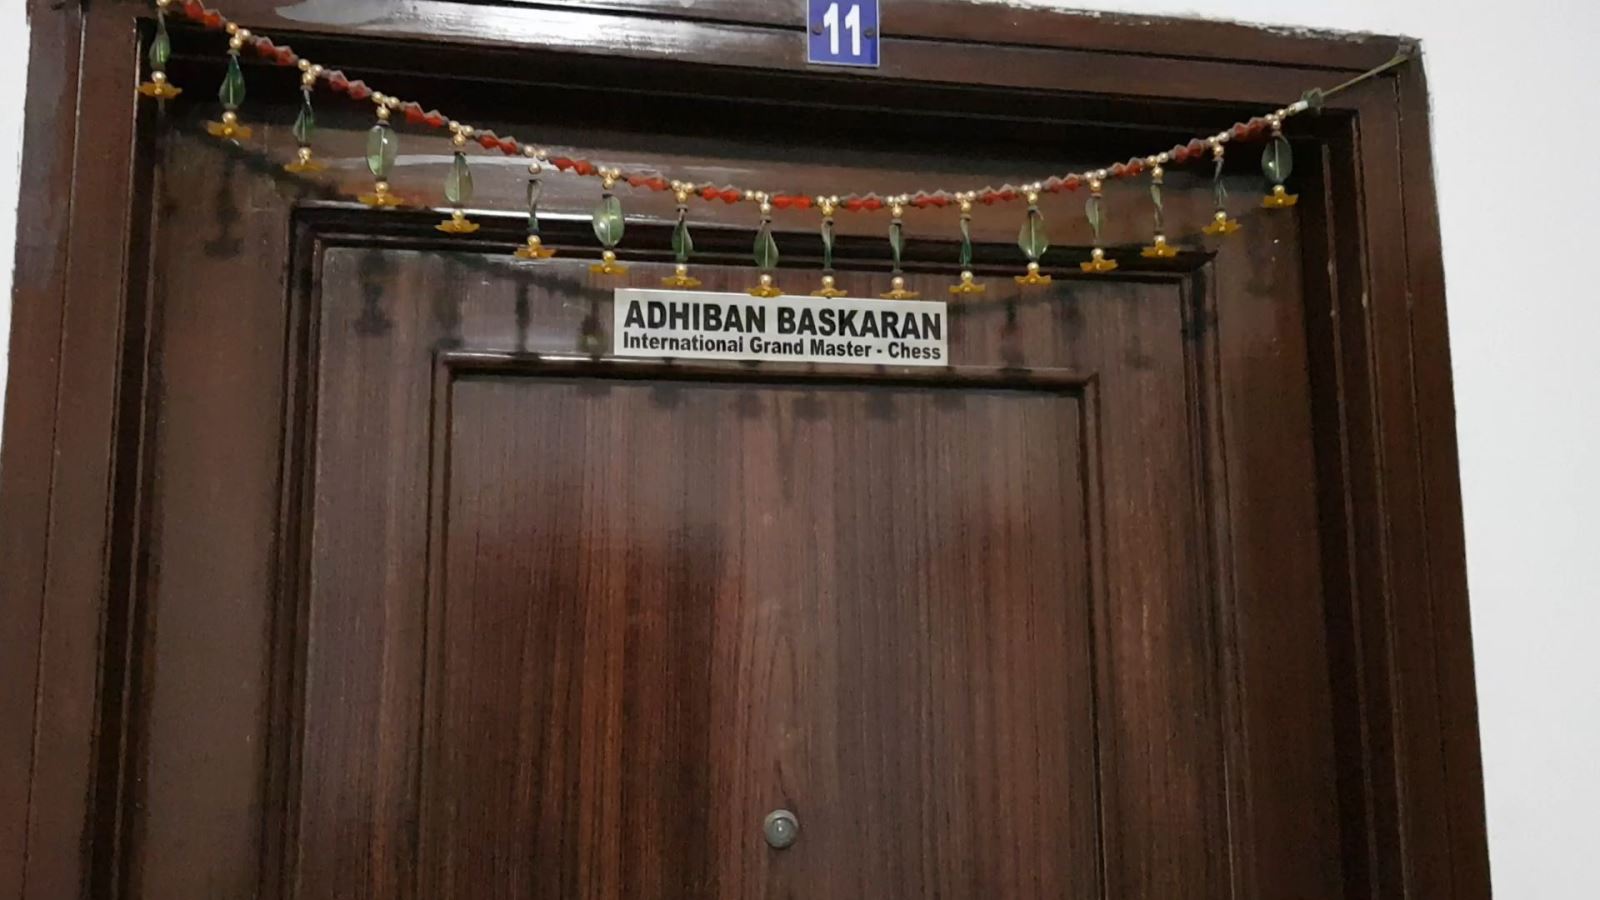 The main door of Adhiban Baskaran's apartment